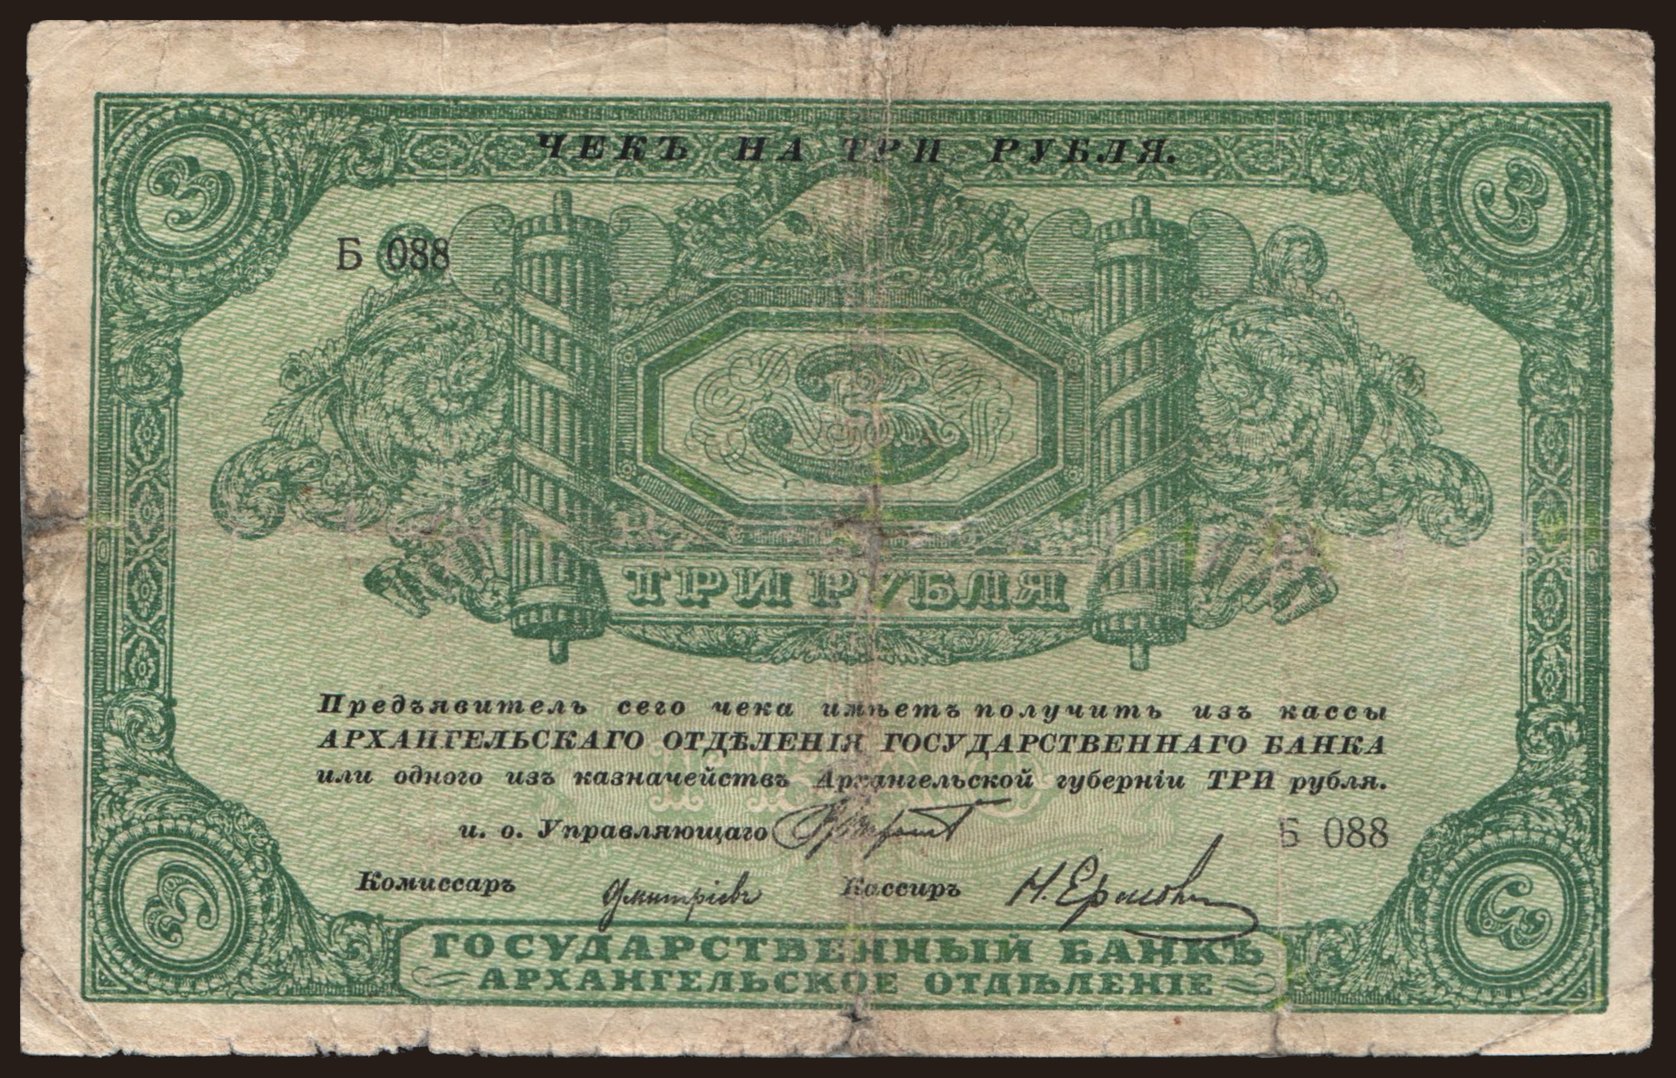 Archangelsk, 3 rubel, 1918